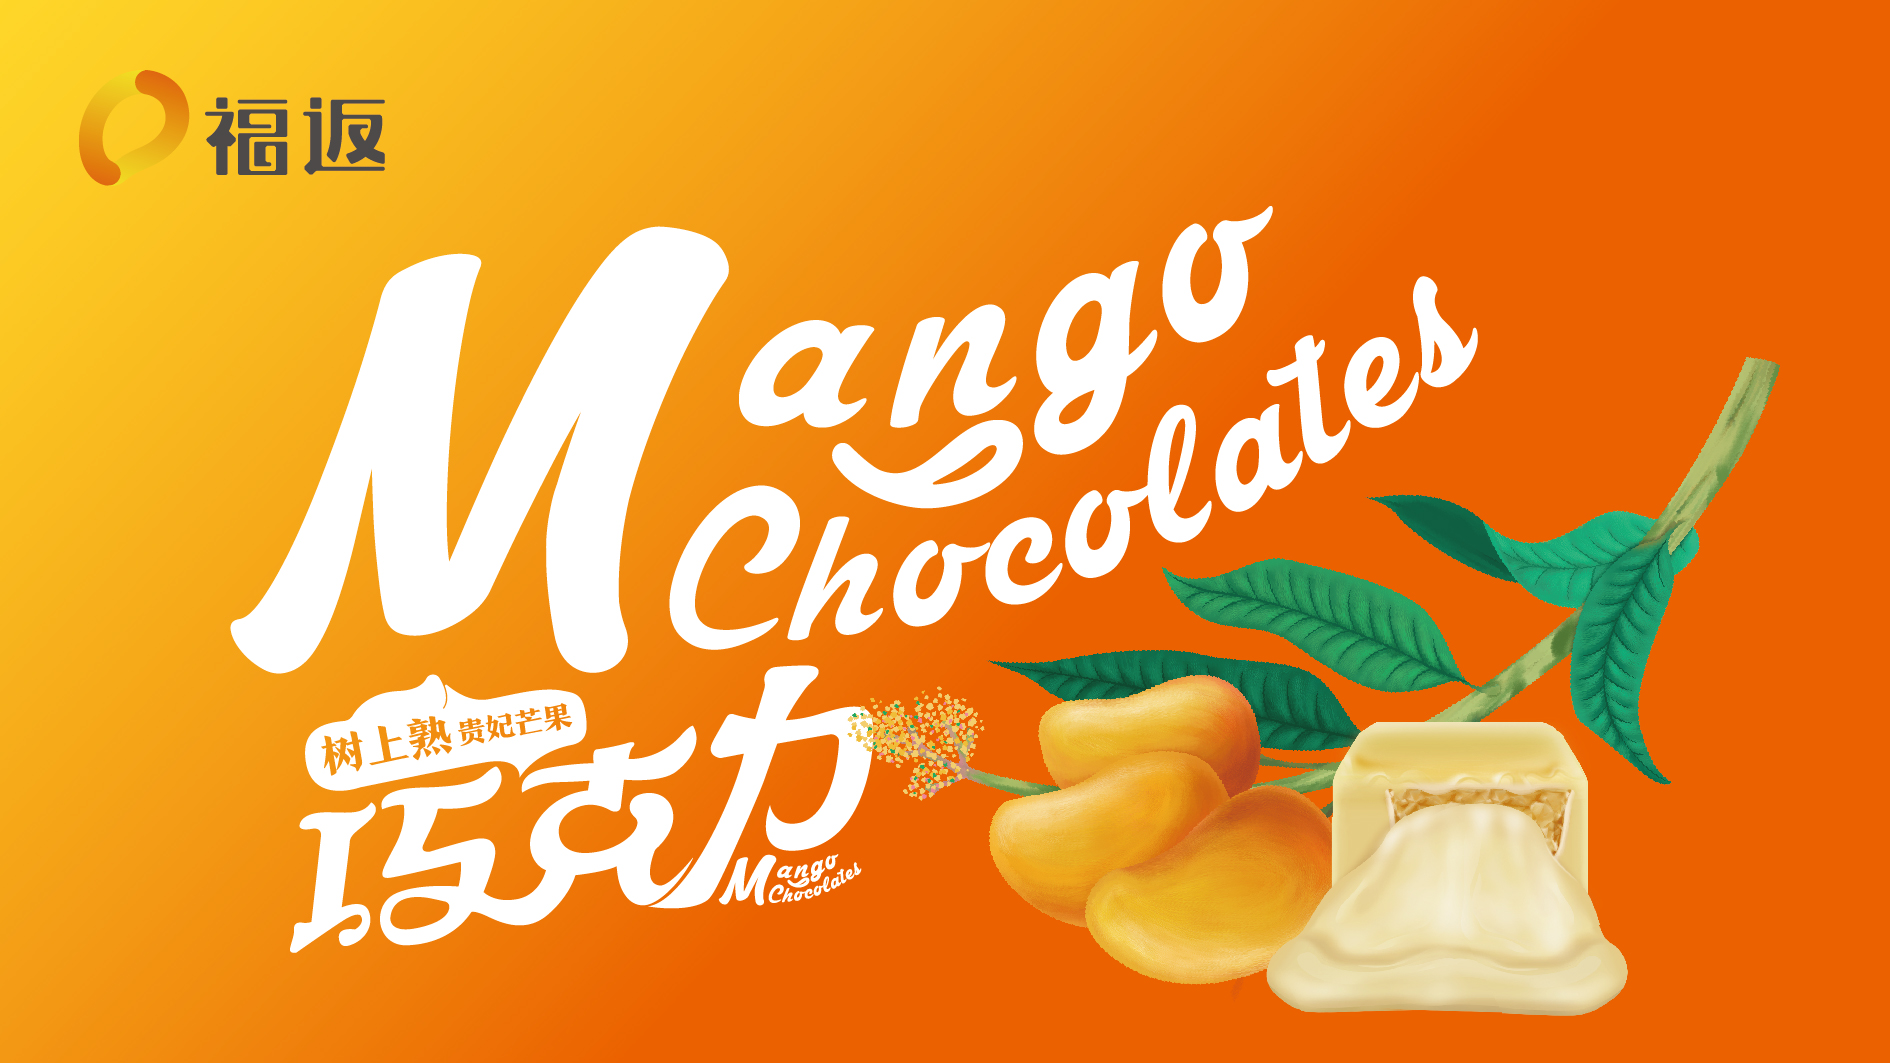 贵州福返芒果巧克力品牌形象设计